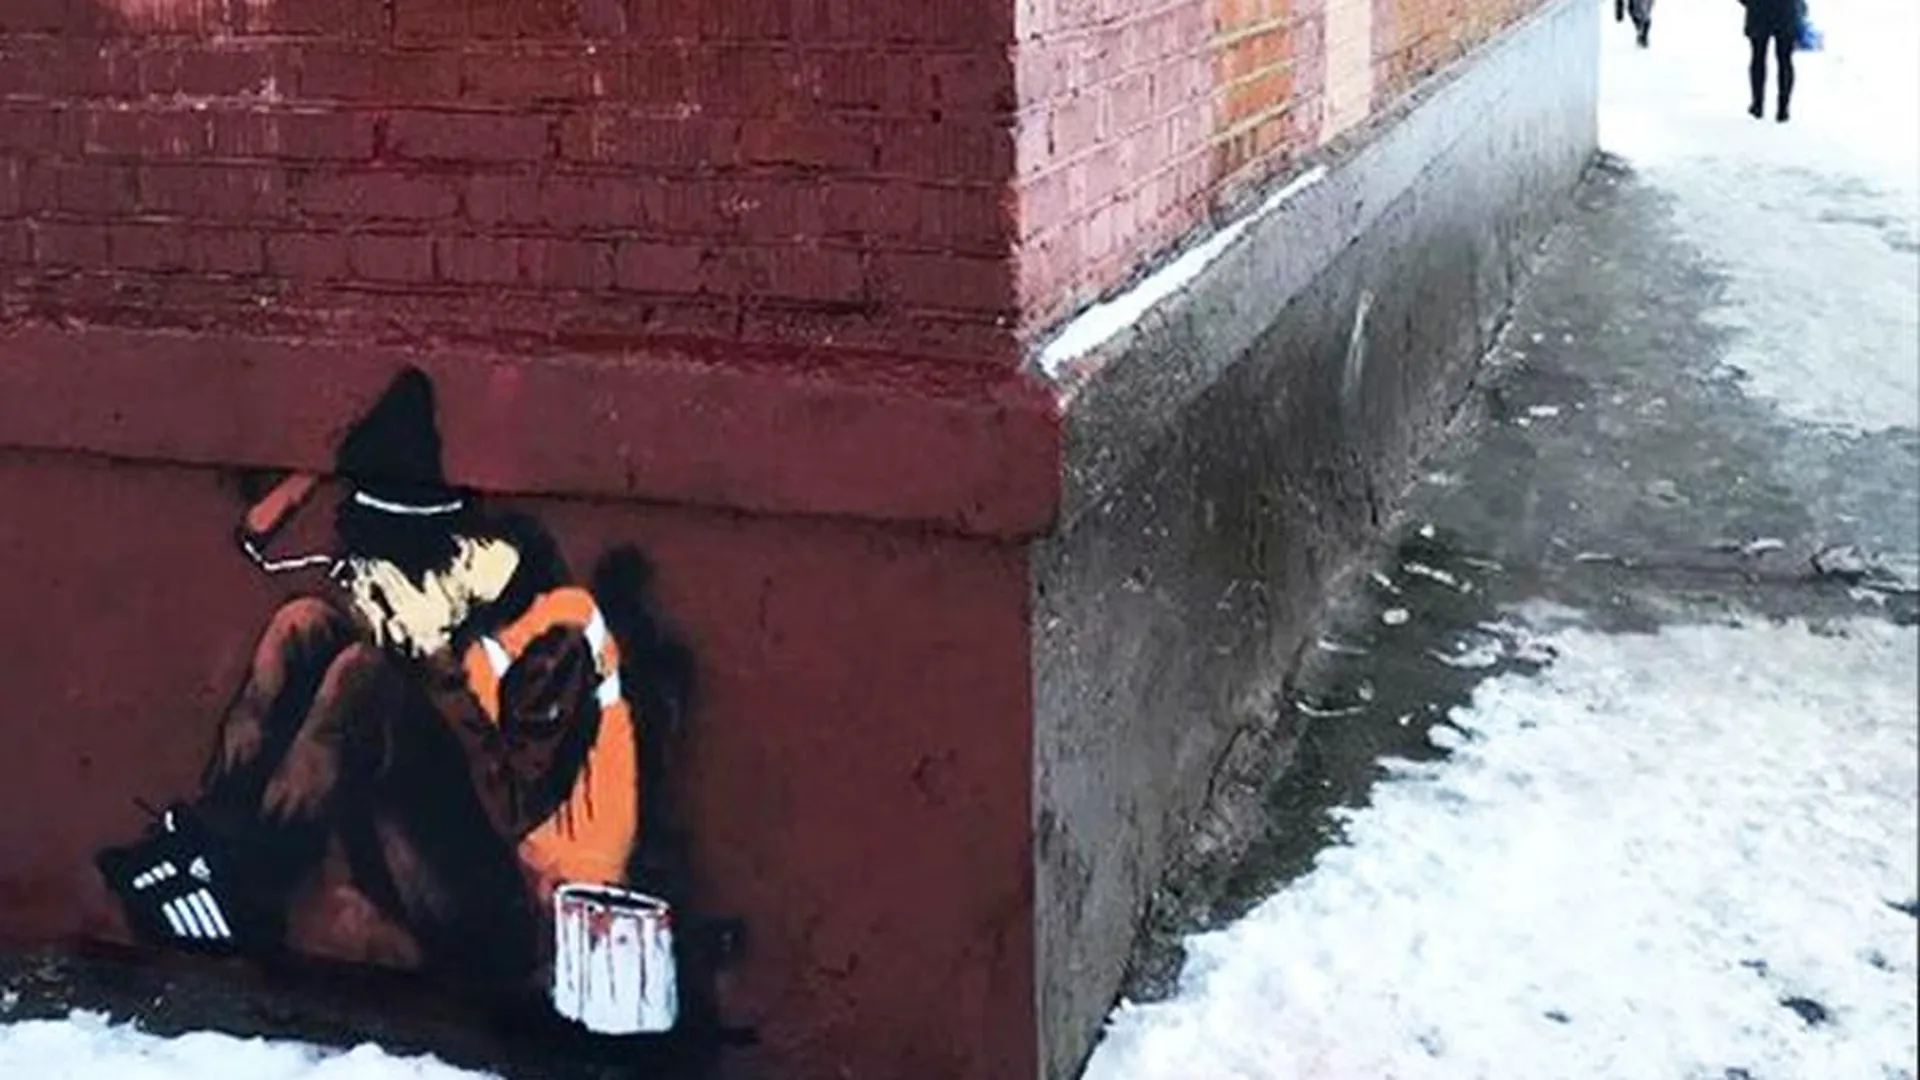 Художник из Химок общается с коммунальщиками через стрит-арт